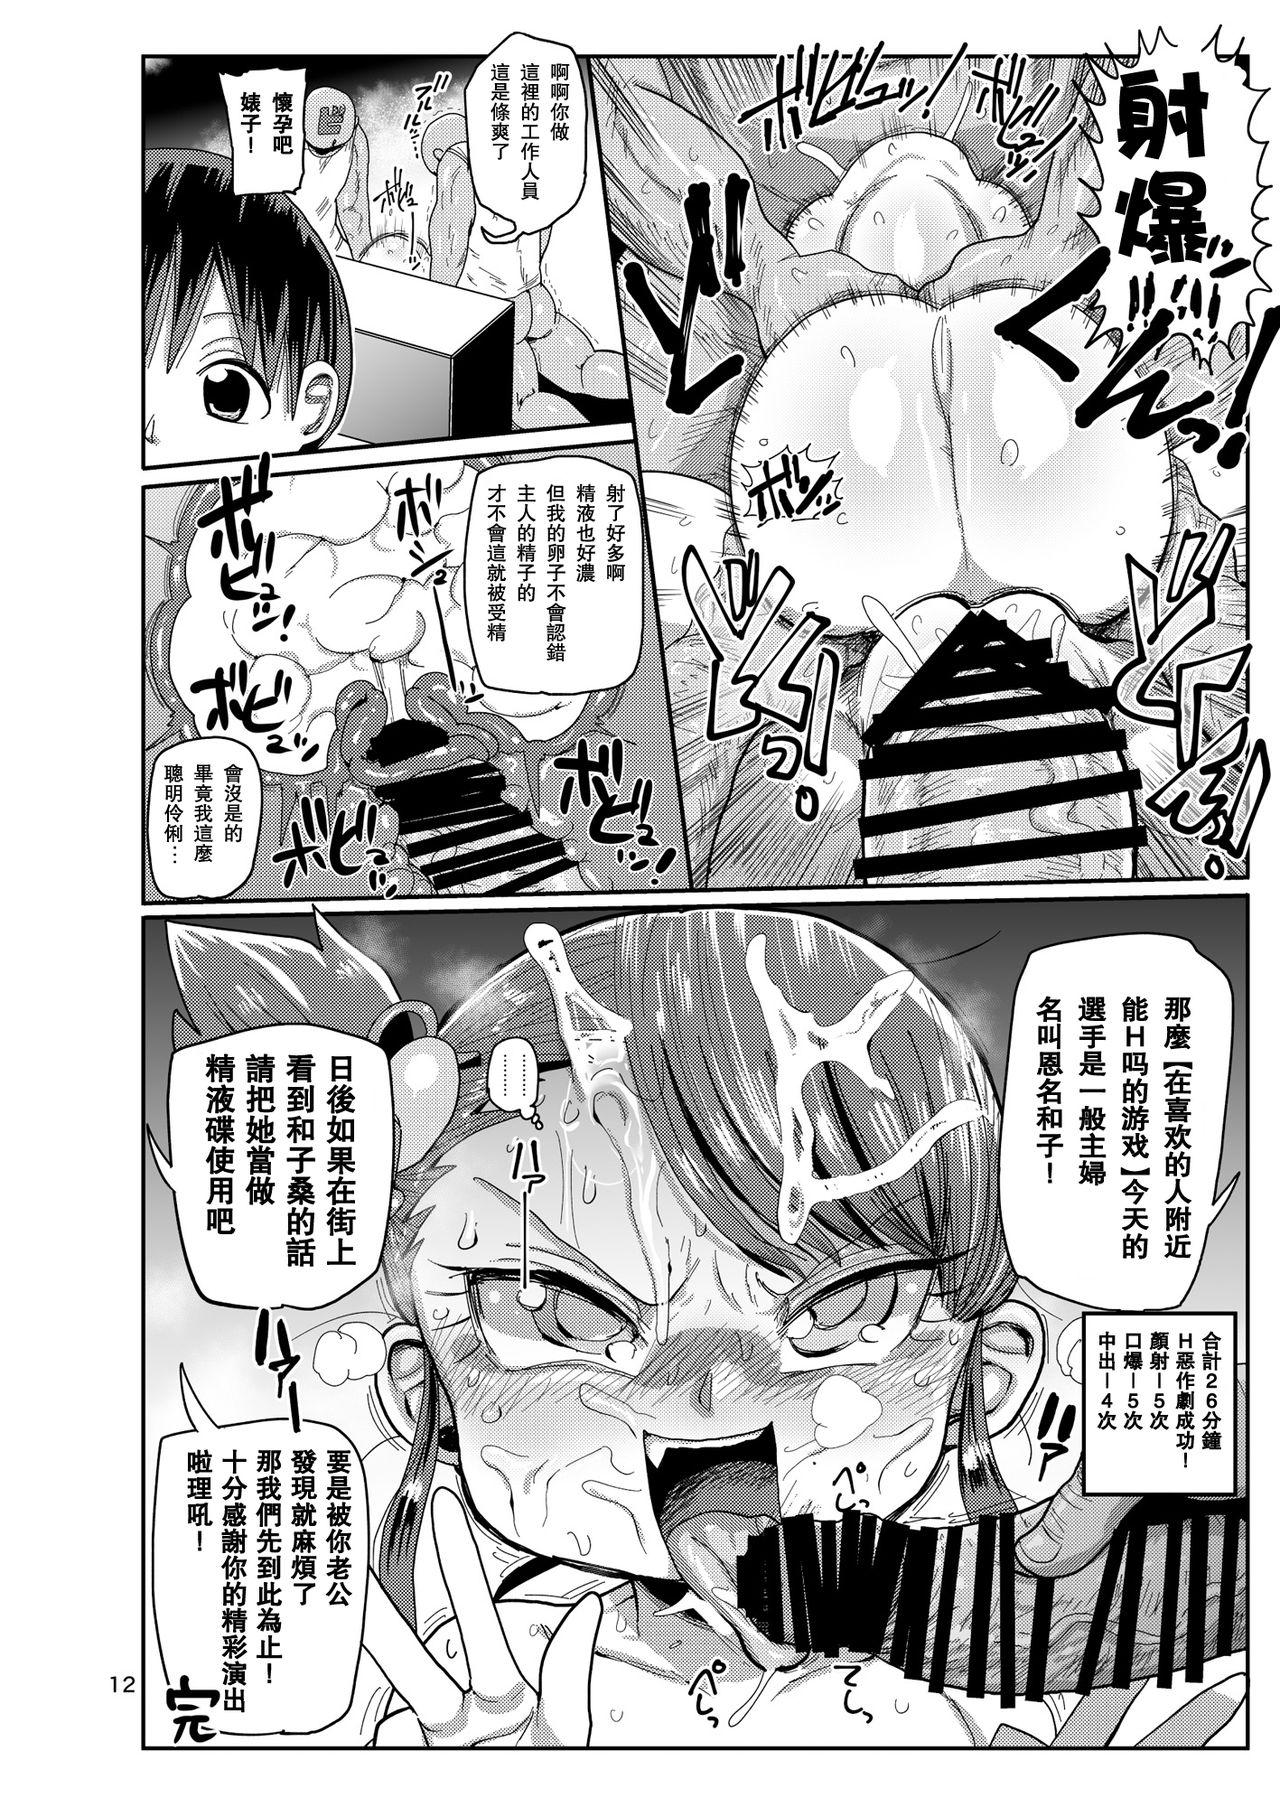 Titten Watashi no Mawari ni wa Kiken ga Ippai! - Original Tiny - Page 11